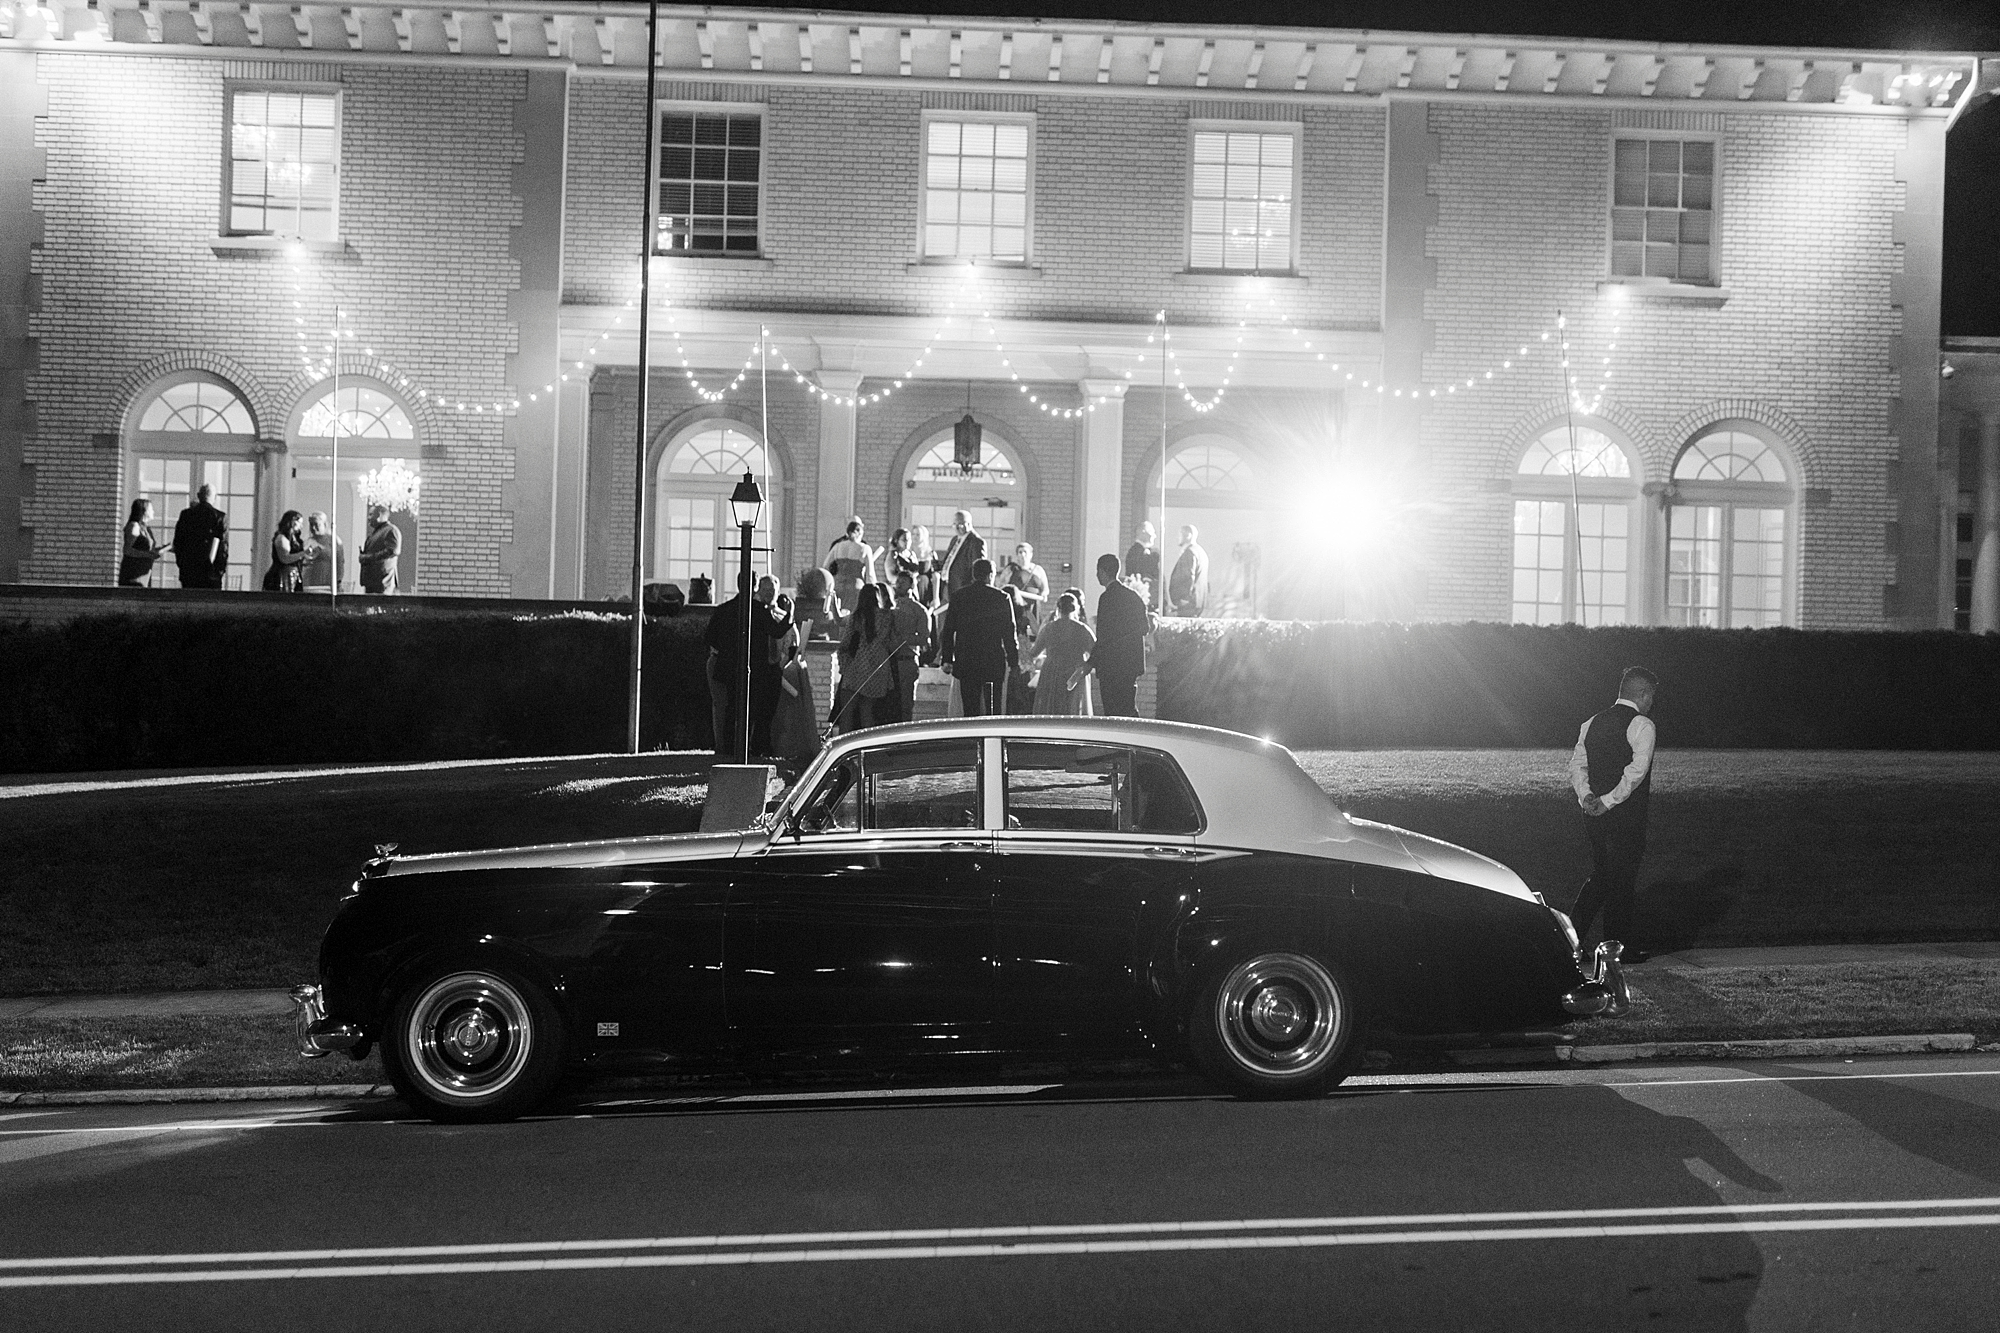 classic getaway car for NC wedding reception